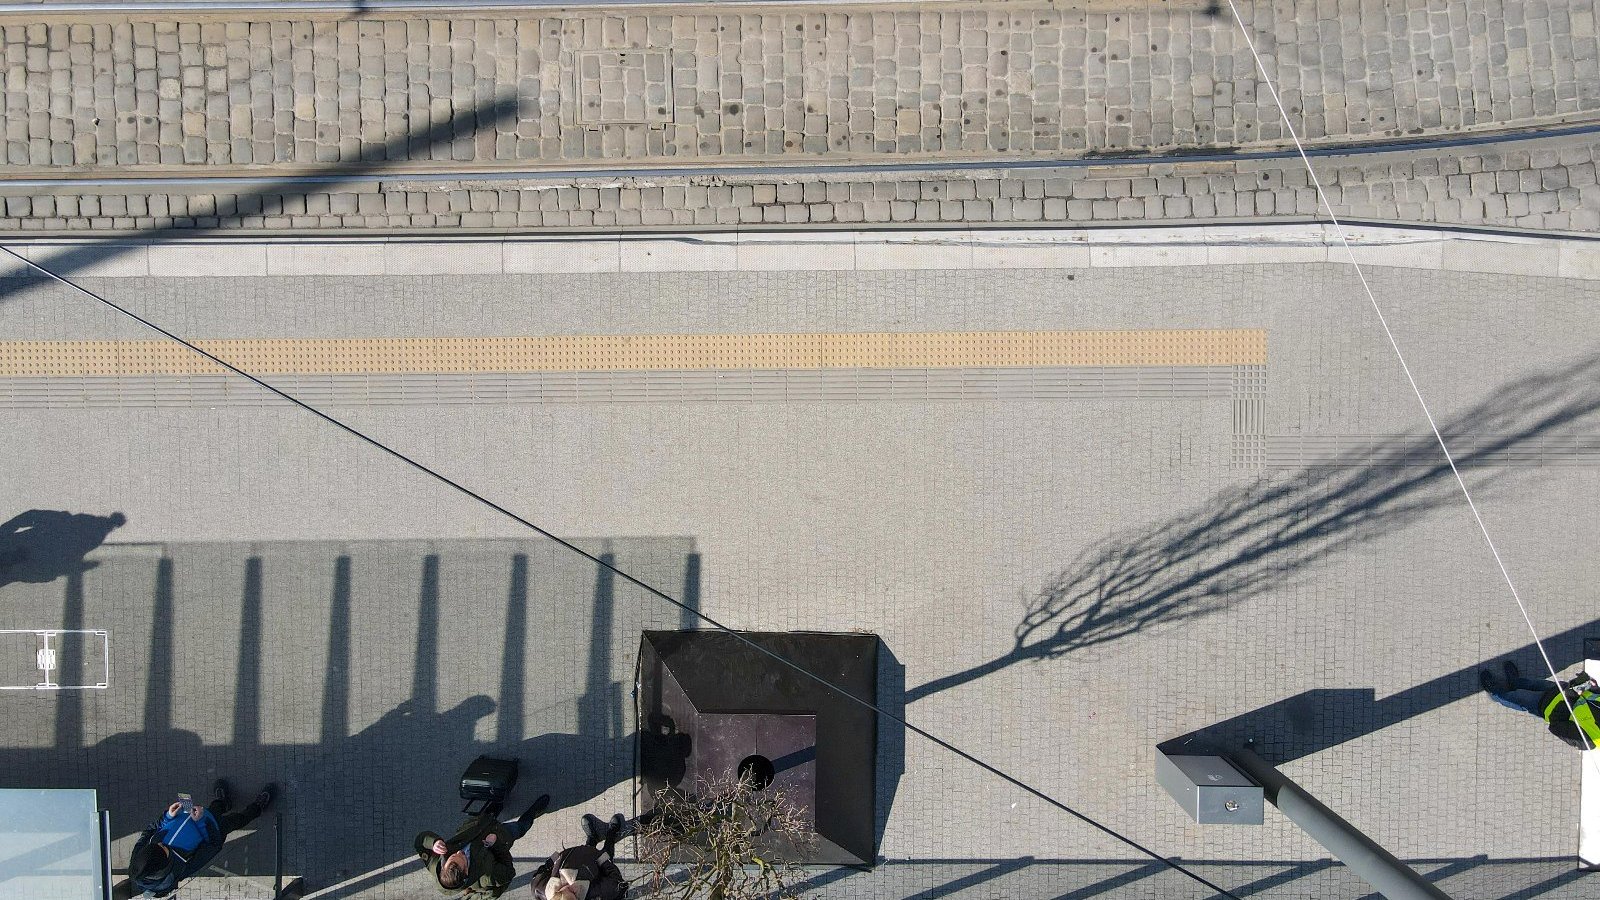 Zdjęcie przedstawia przystanek z lotu ptaka. Widać m.in. tory tramwajowe i pas żółtej nawierzchni fakturowej.